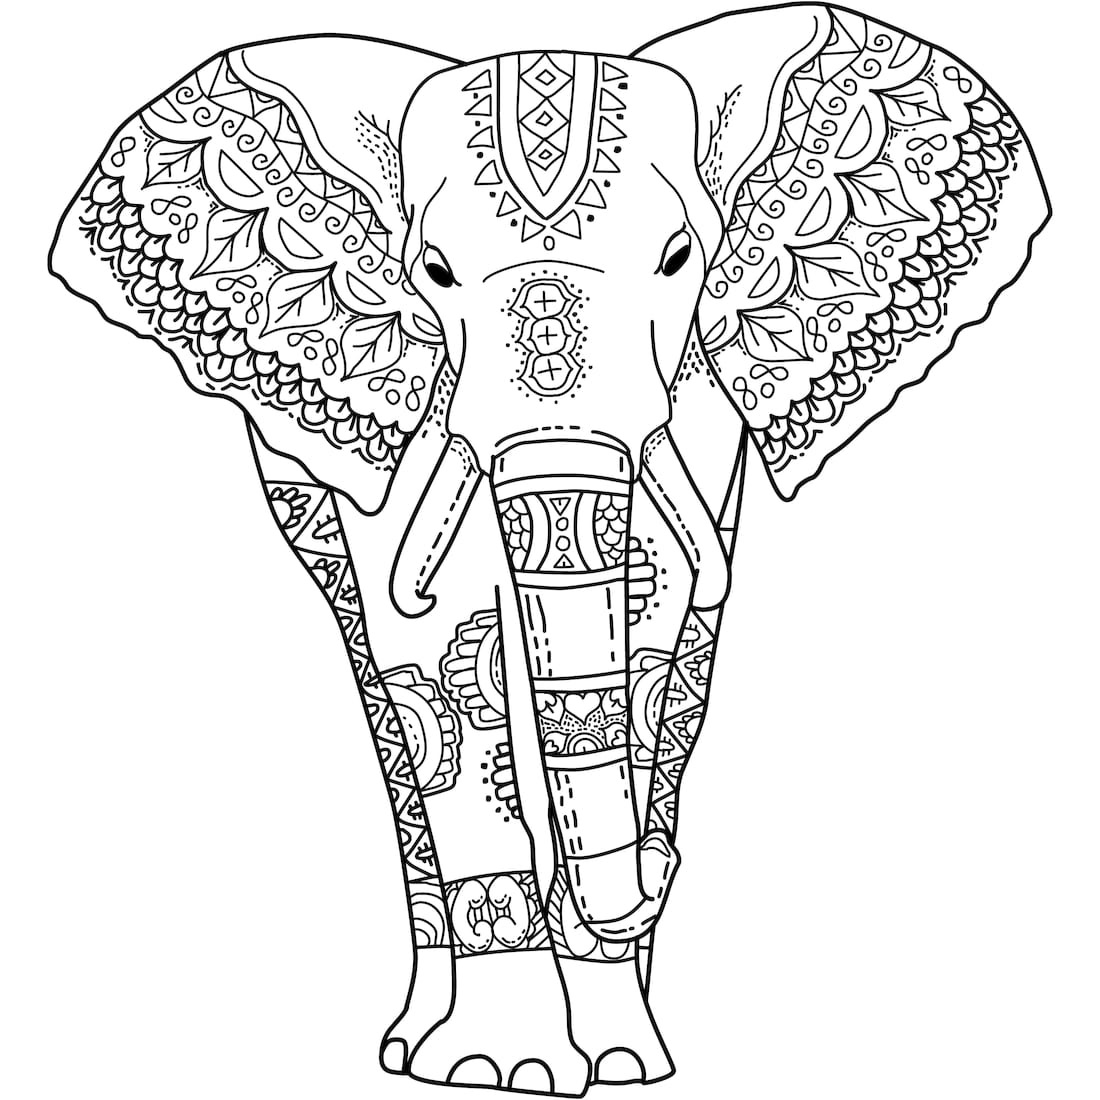 Tranh tô màu voi có những hoa văn rất đẹp